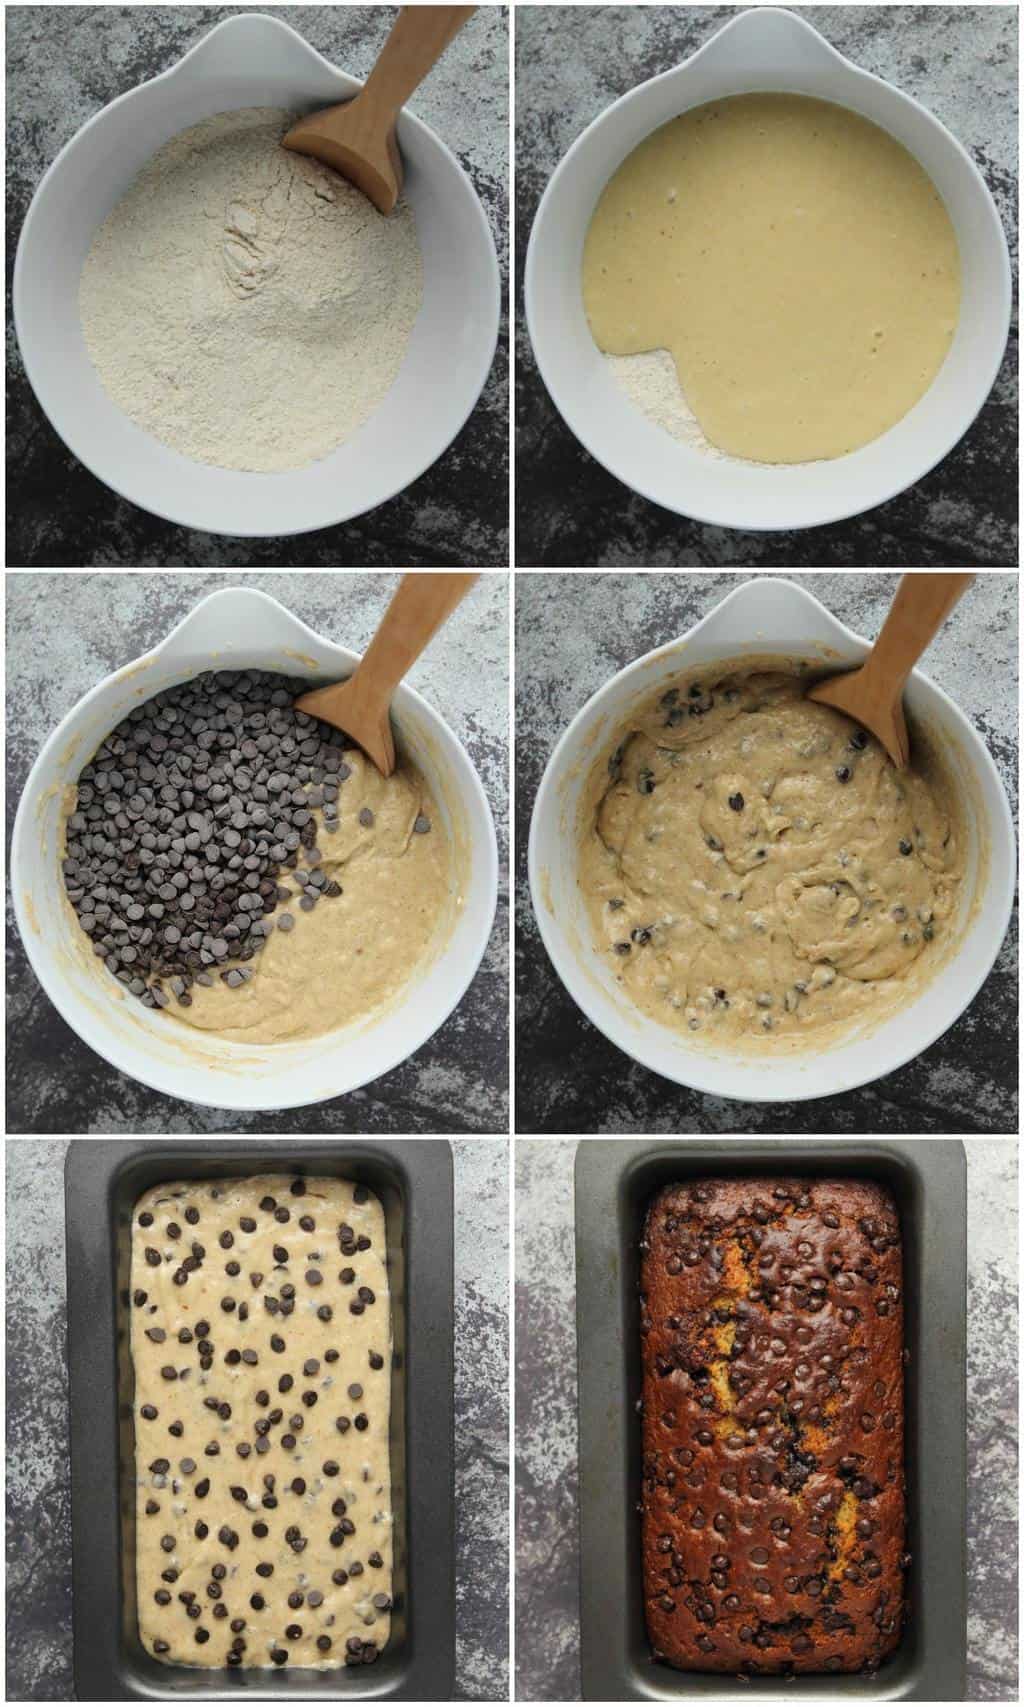  Proceso paso a paso collage de fotos de hacer pan vegano de plátano con chispas de chocolate.